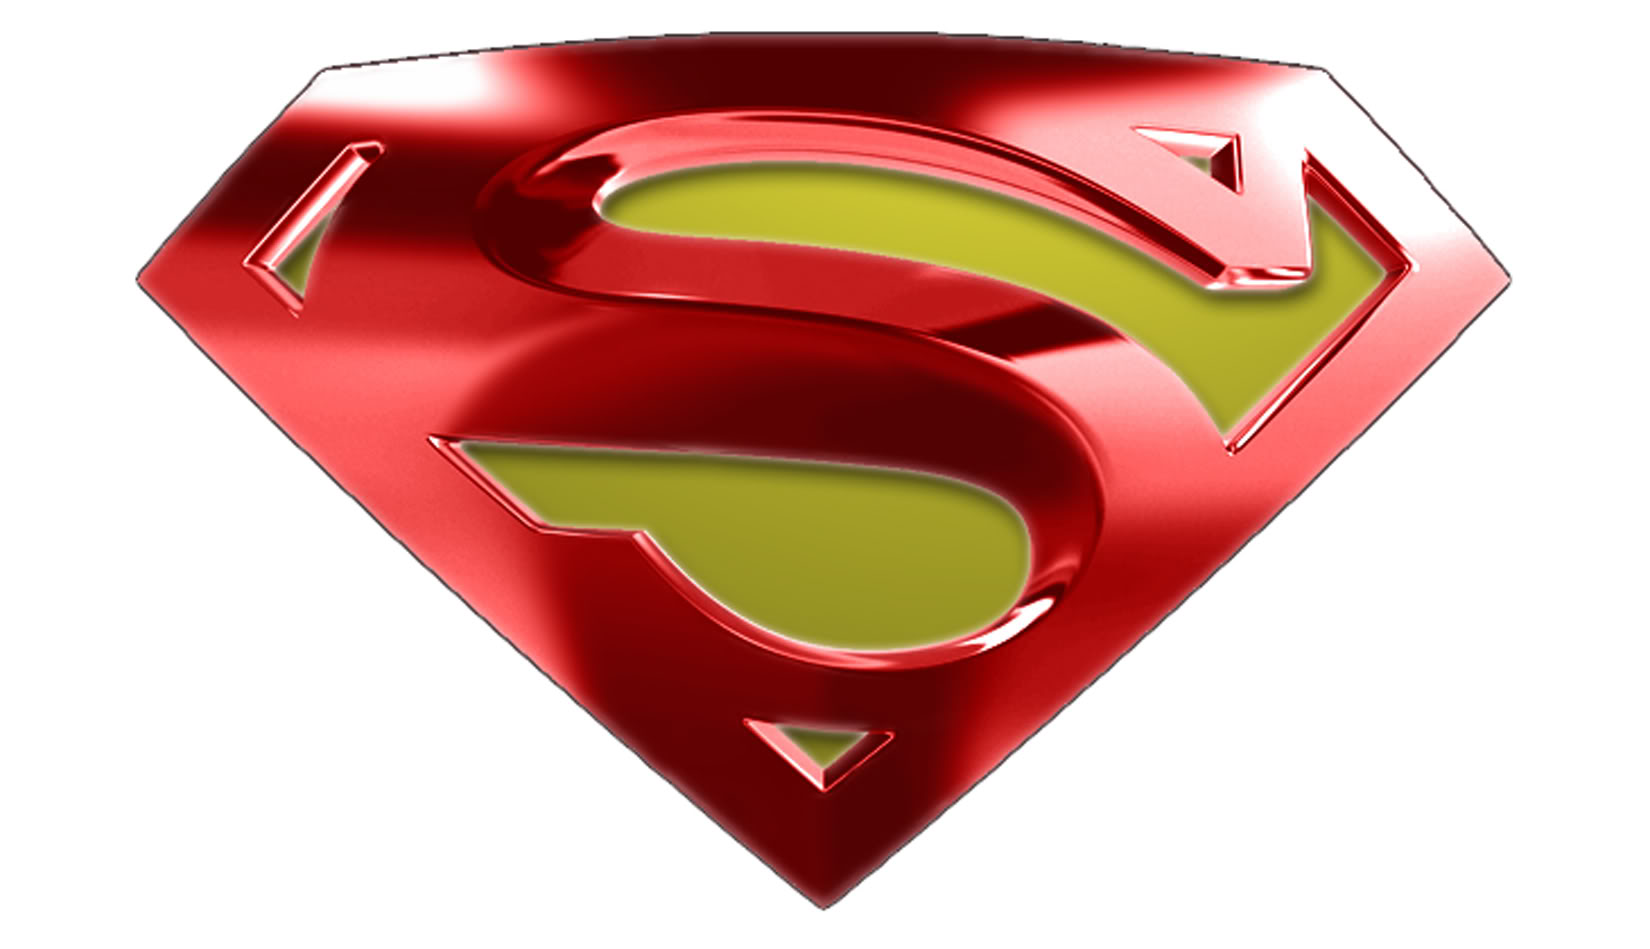 Superman Font - ClipArt Best